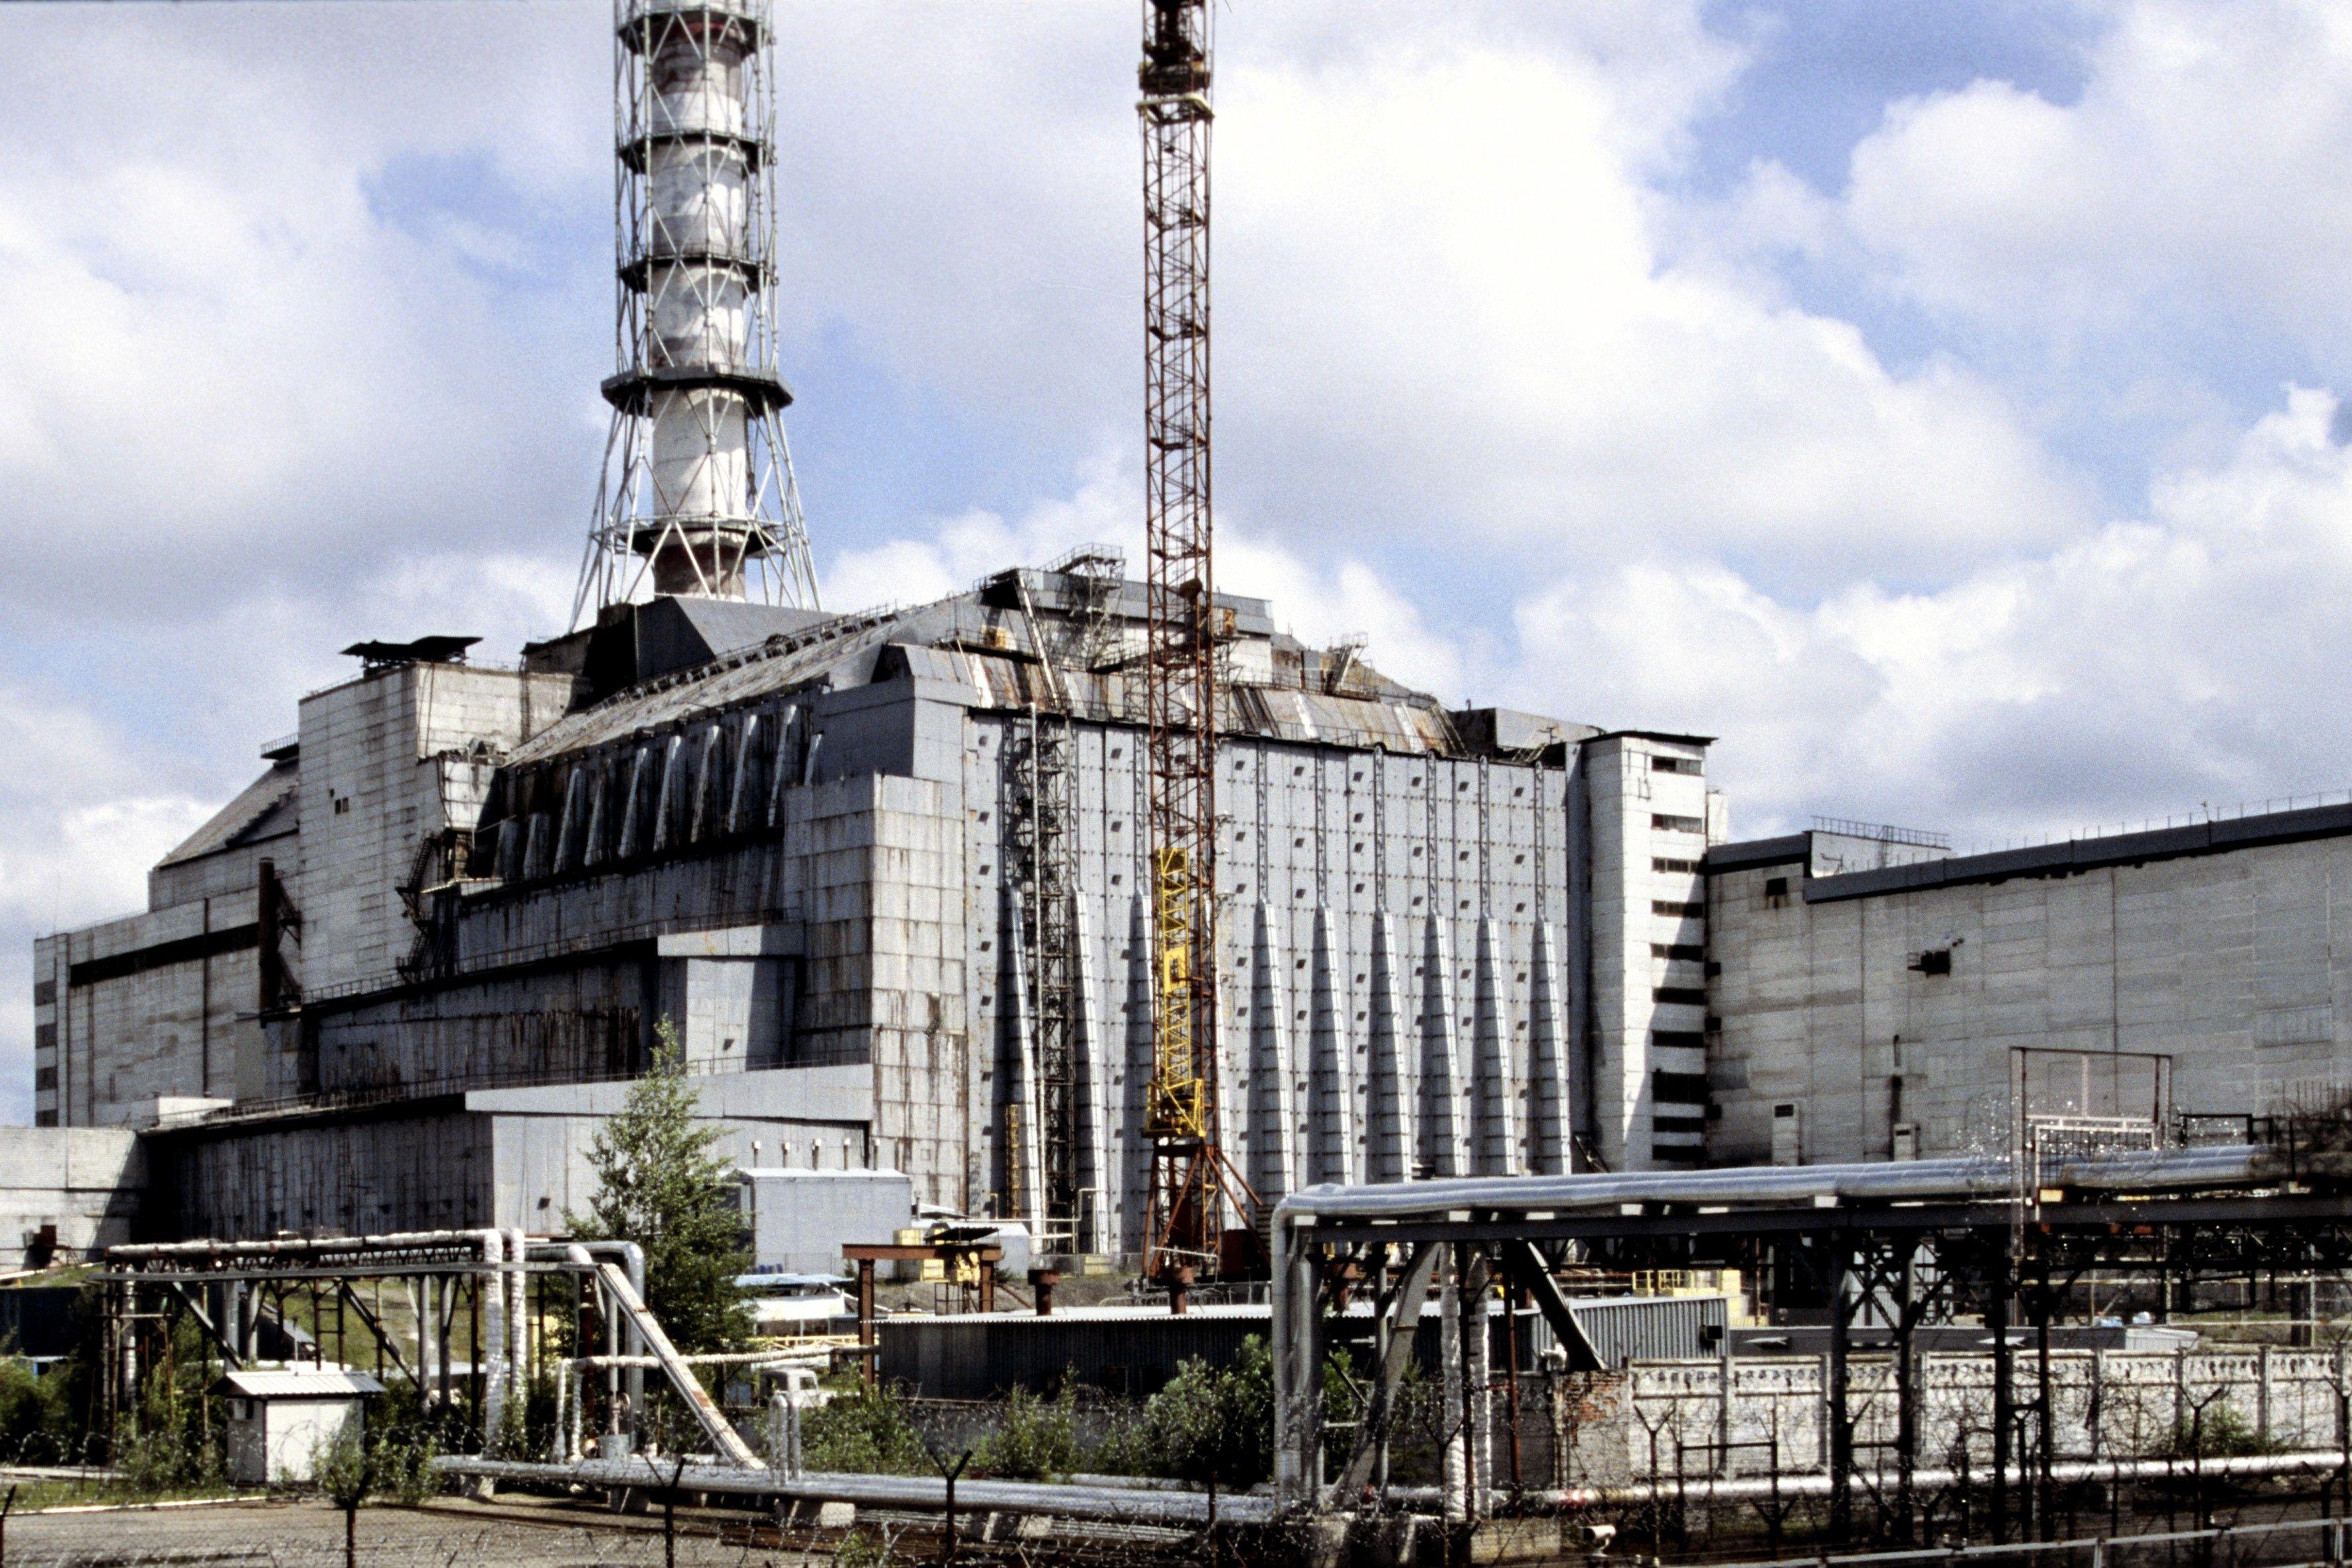 Чернобыльская аэс атомная электростанция. Припять ЧАЭС 1986. Припять АЭС энергоблок. Припять 4 энергоблок. Чернобыль 26 апреля 1986.